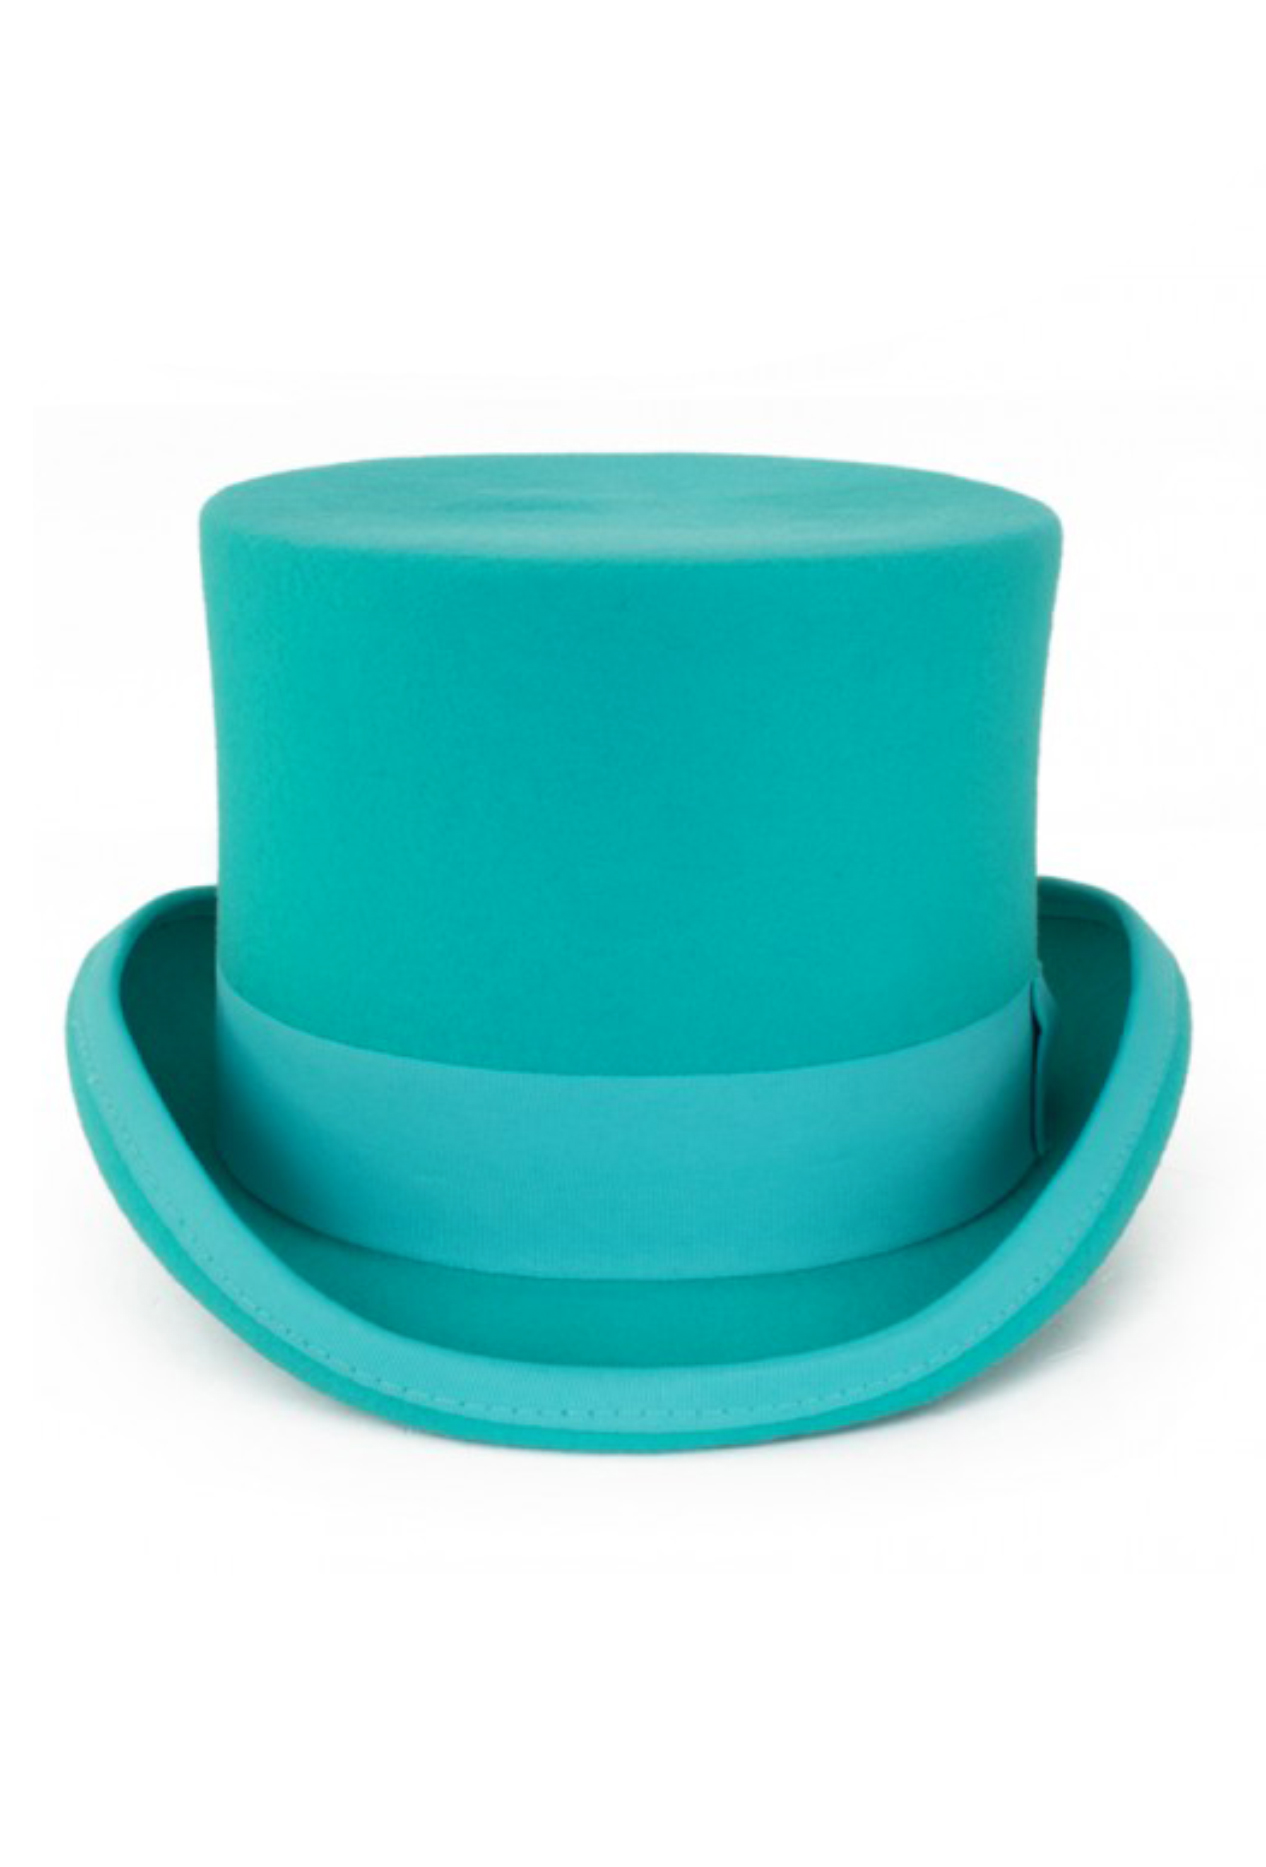 Makkelijker maken Richtlijnen evalueren Steampunk hoge hoed turquoise tophat kopen? - FeestinjeBeest.nl